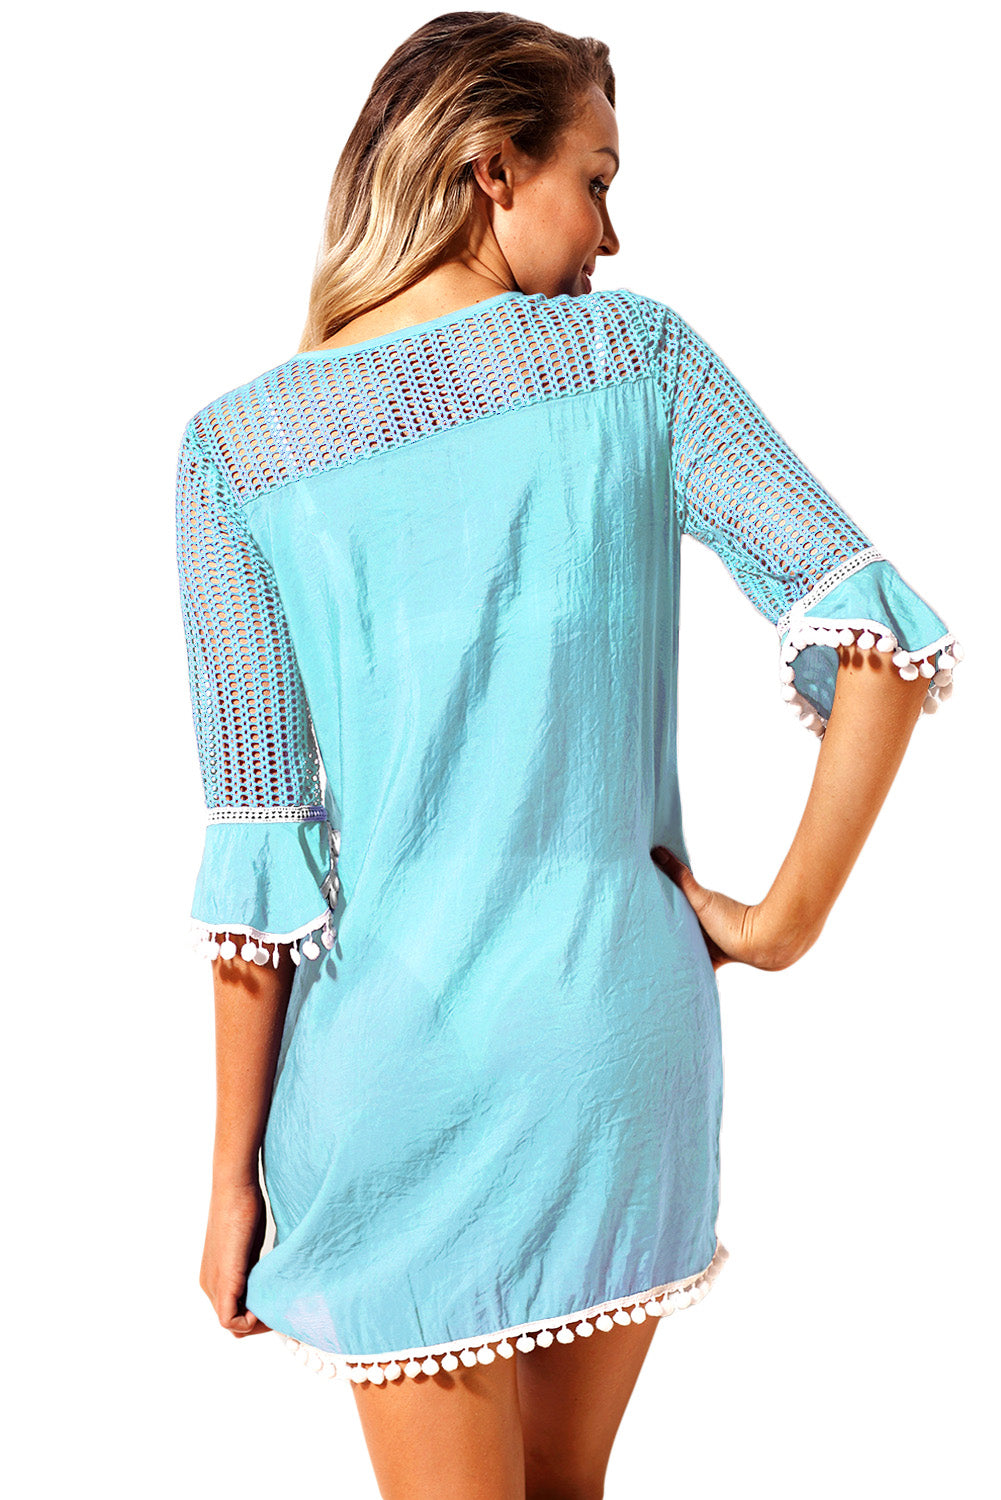 Robe de Plage Boheme Femme Ete Bleu Clair Pompon au Crochet